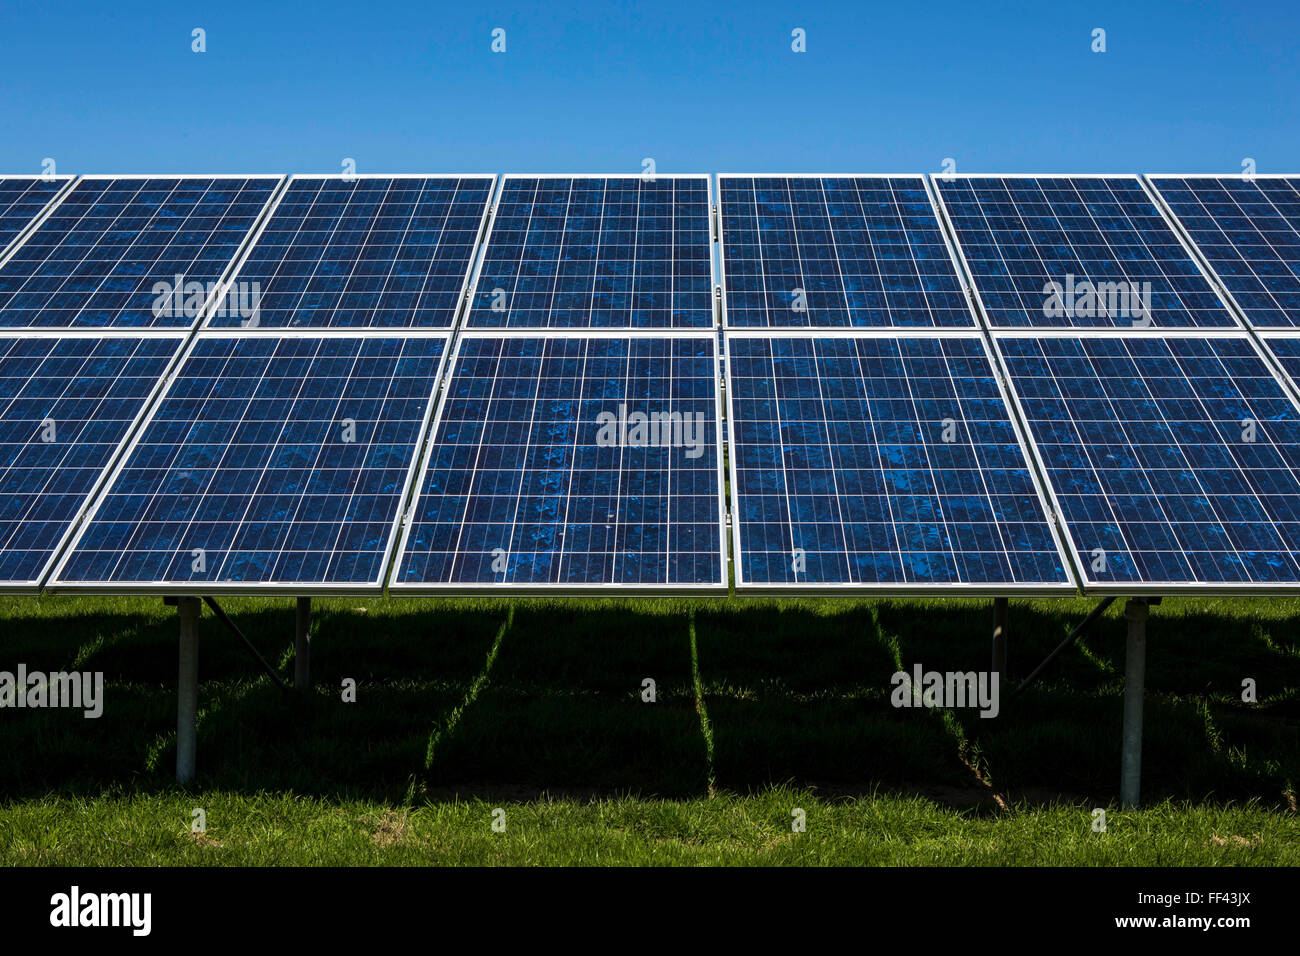 Des rangées de panneaux solaires photovoltaïques dans un champ pour la production d'électricité. L'énergie renouvelable à Wadebridge, Cornwall, UK. Banque D'Images